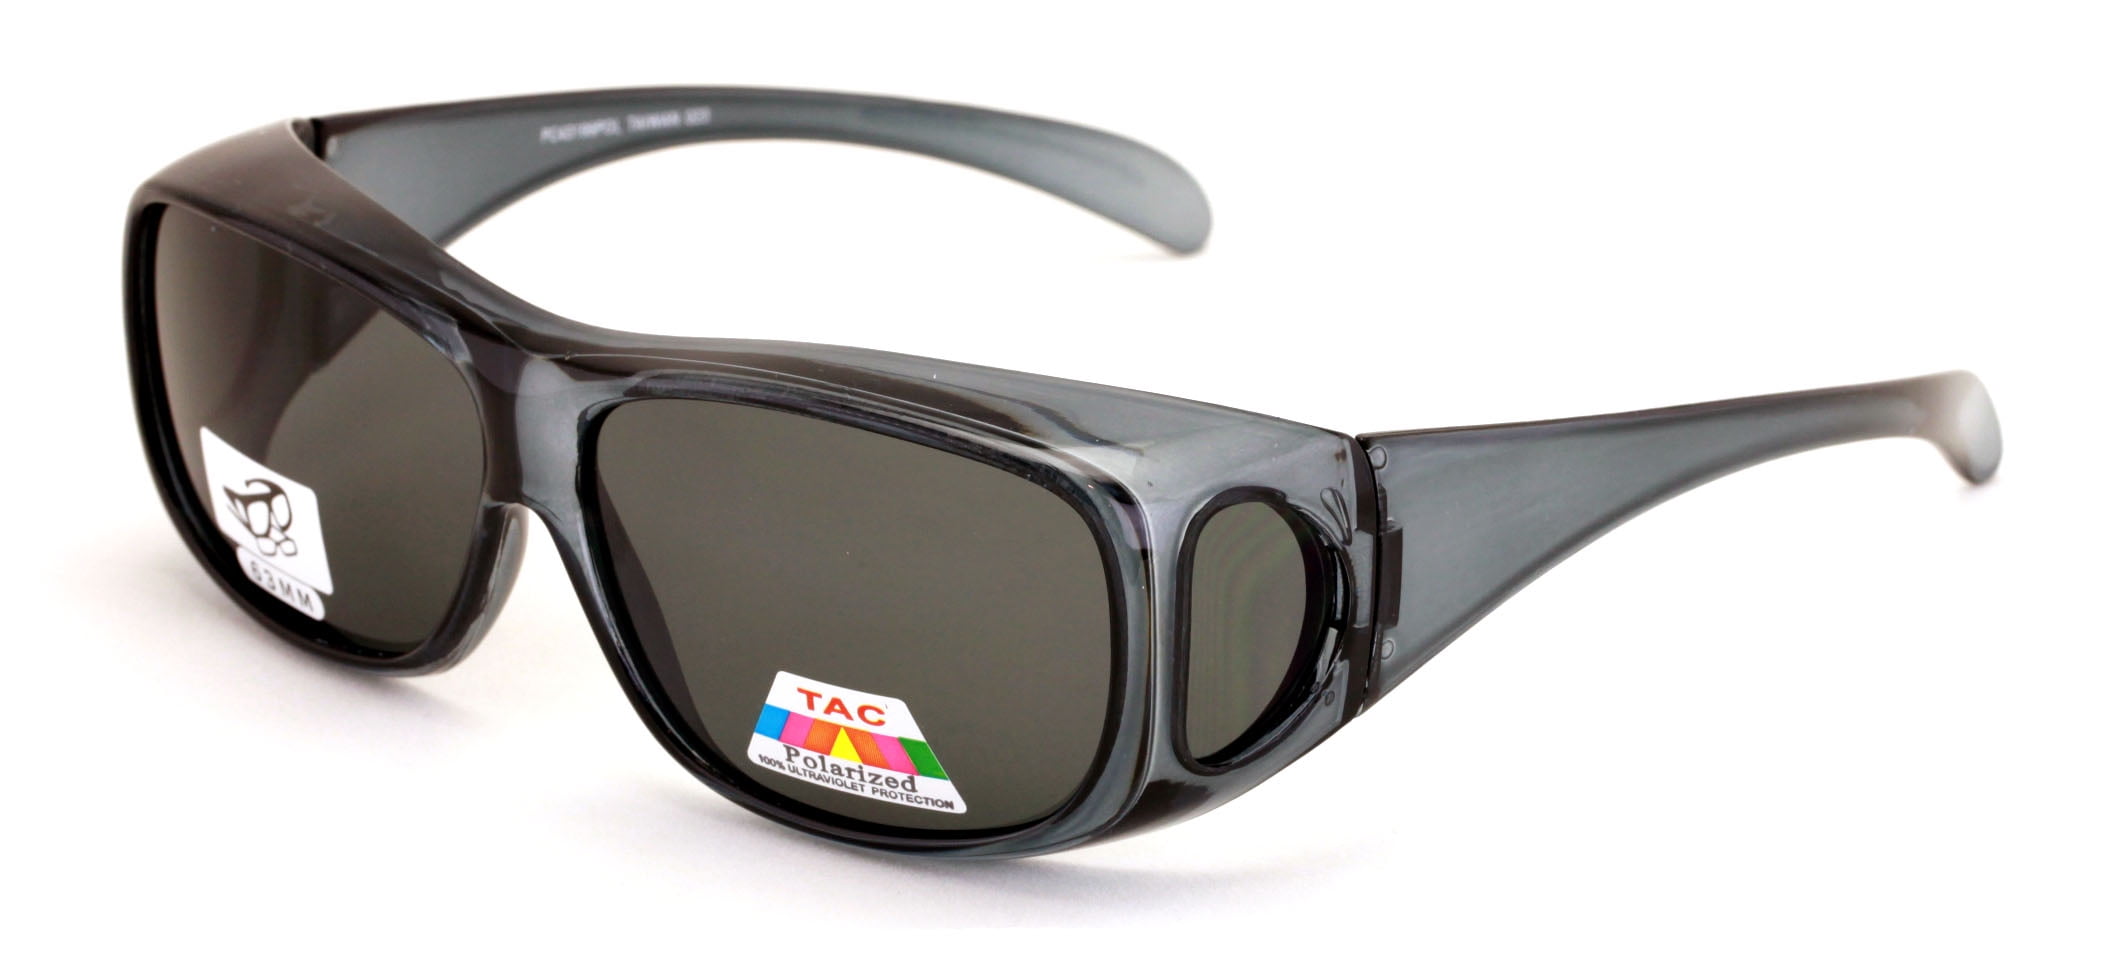 Unisex Classical Sunglasses fit over Prescription glasses Polarized UV PROTECTIO